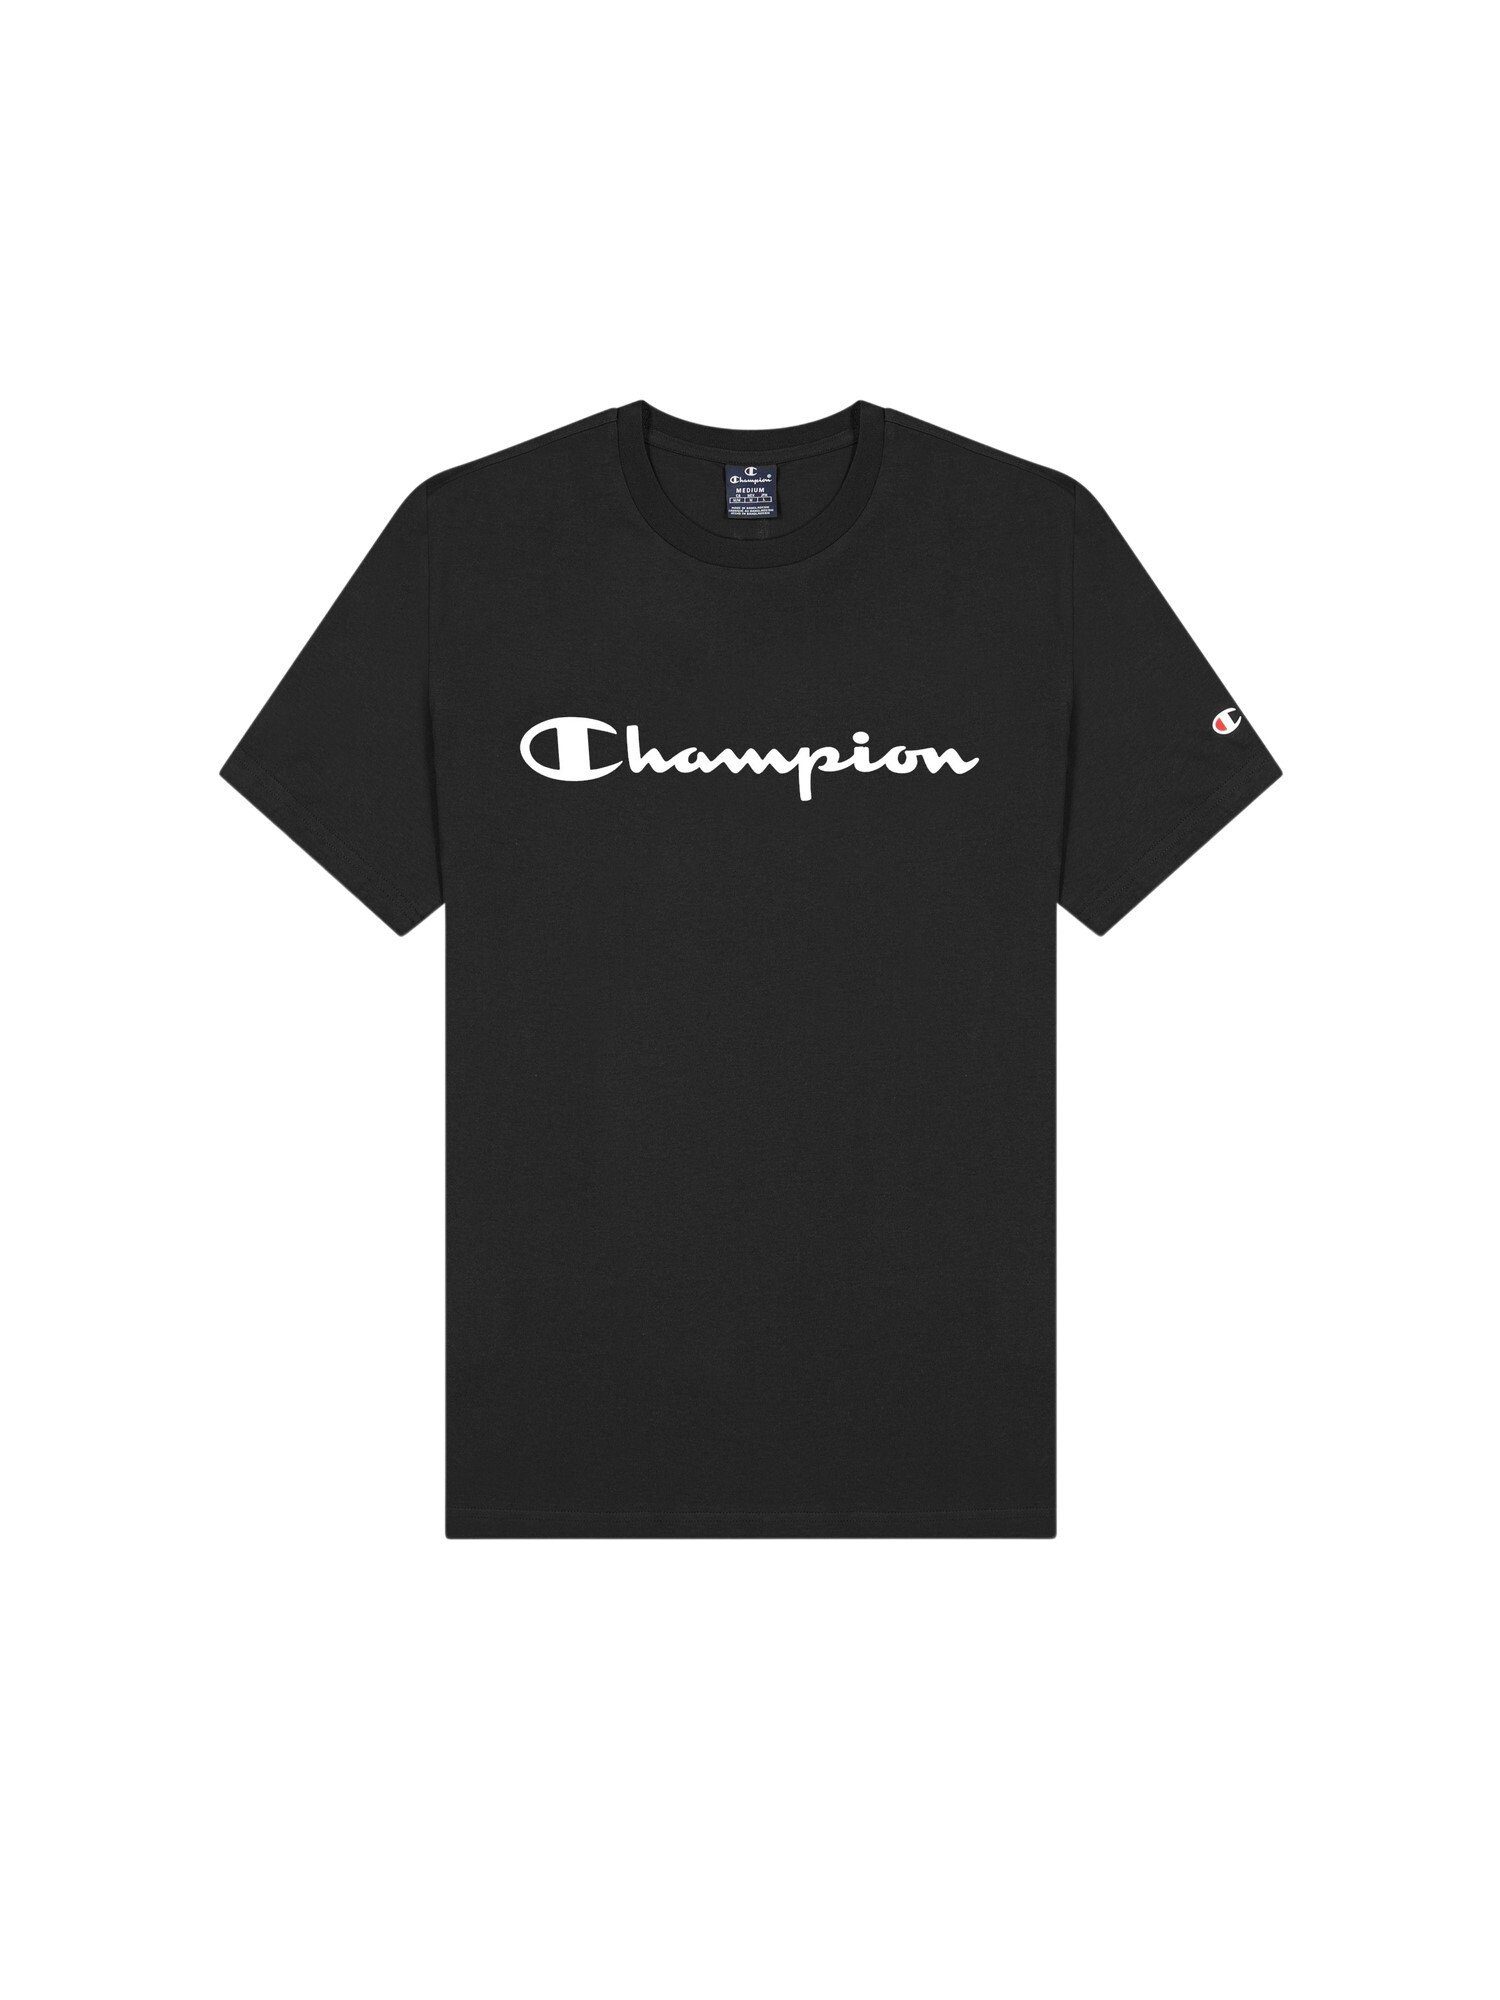 Baumwolle Champion T-Shirt Rundhals-T-Shirt Shirt schwarz aus mit